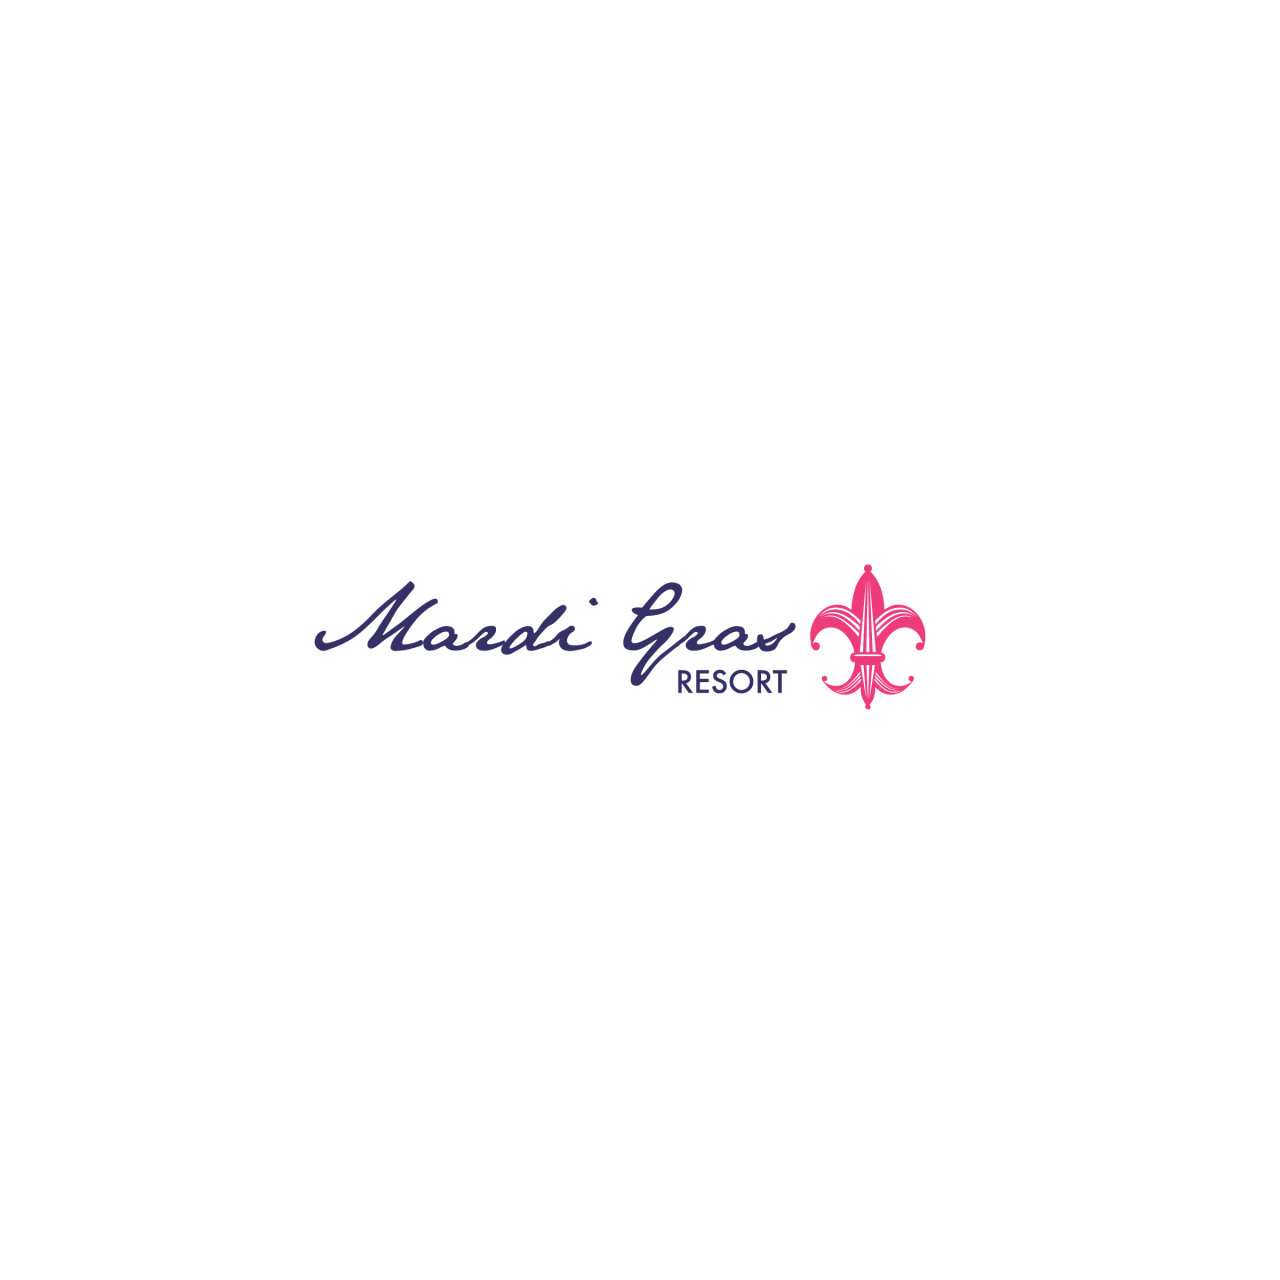 Image of Mardi Gras Resort logo